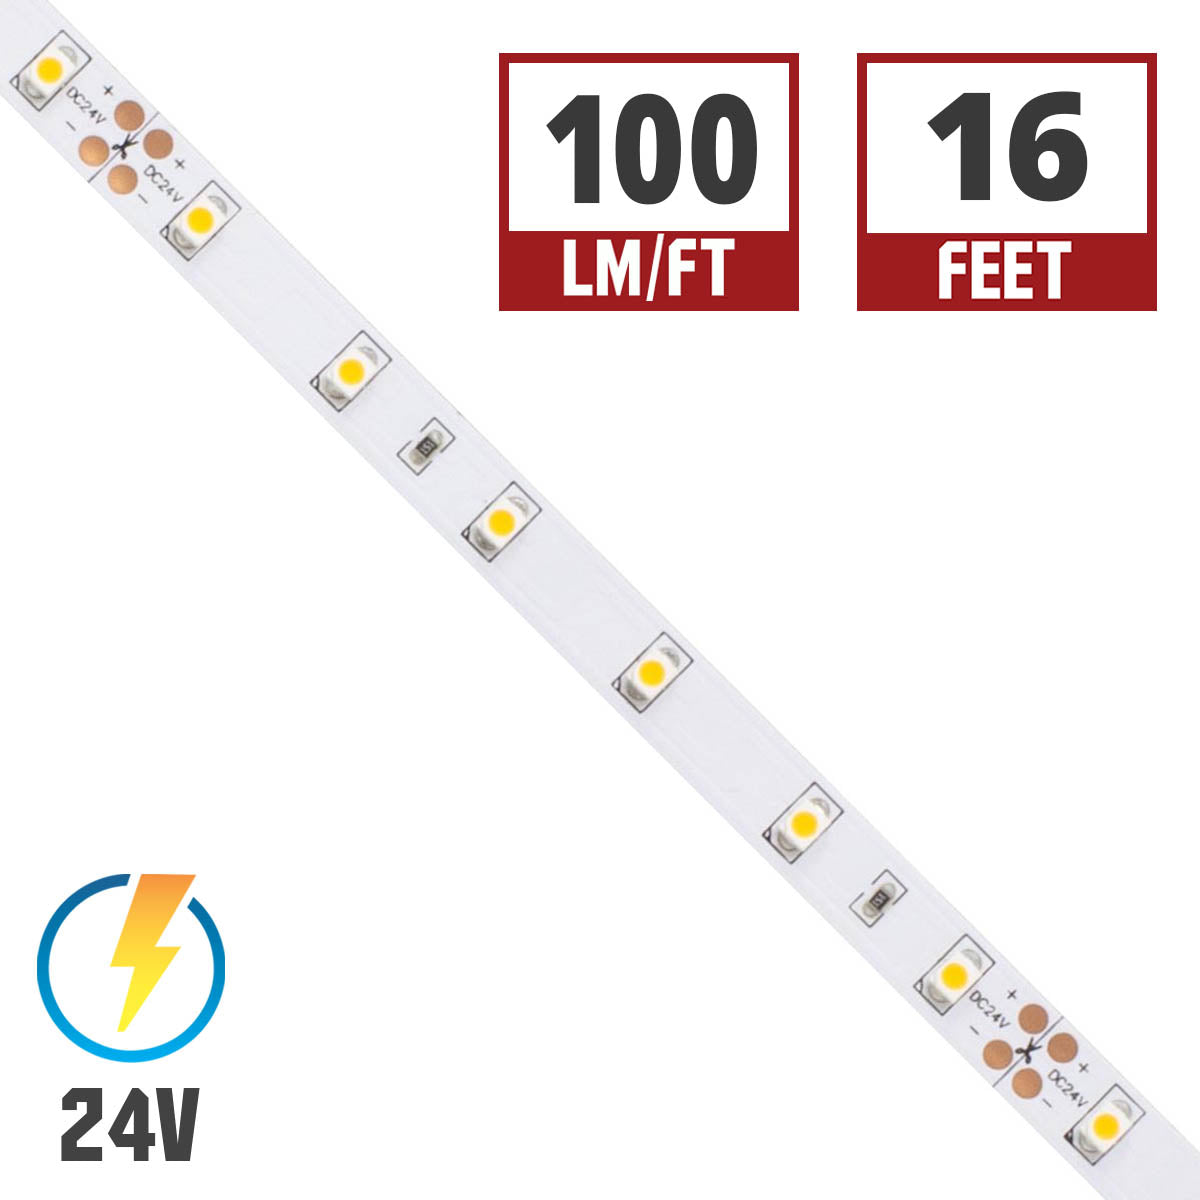 BLAZE LED Strip Light, 100+ Lumens per Ft, 24V